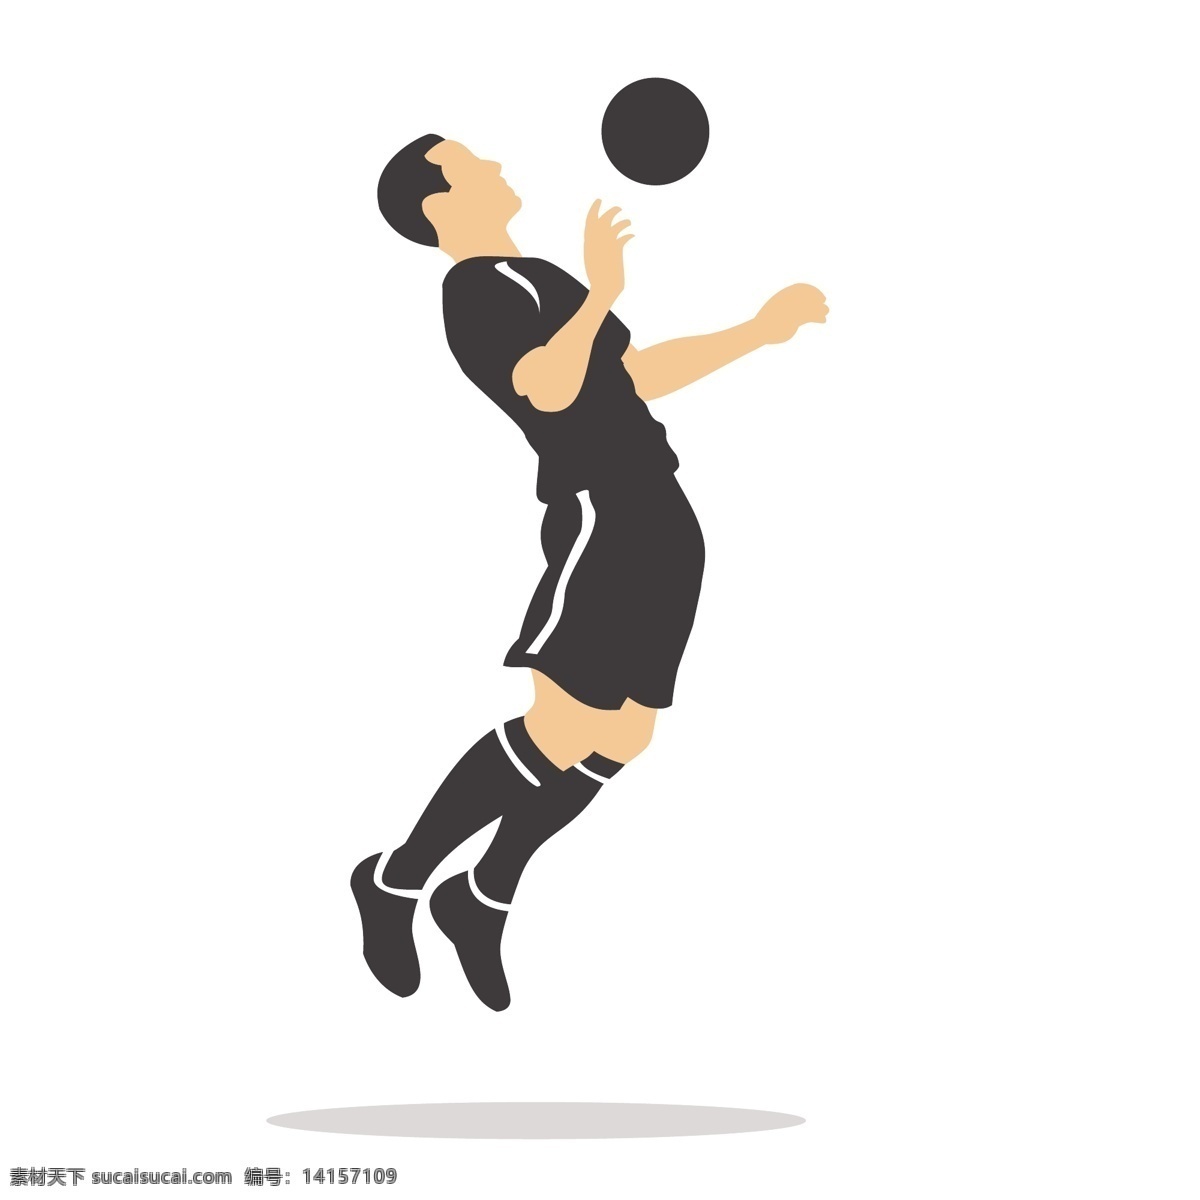 胸部 挡球 矢量 足球 足球运动 踢足球 姿势 踢球姿势 运动姿势 体育 体育运动 踢球动作 动作姿势